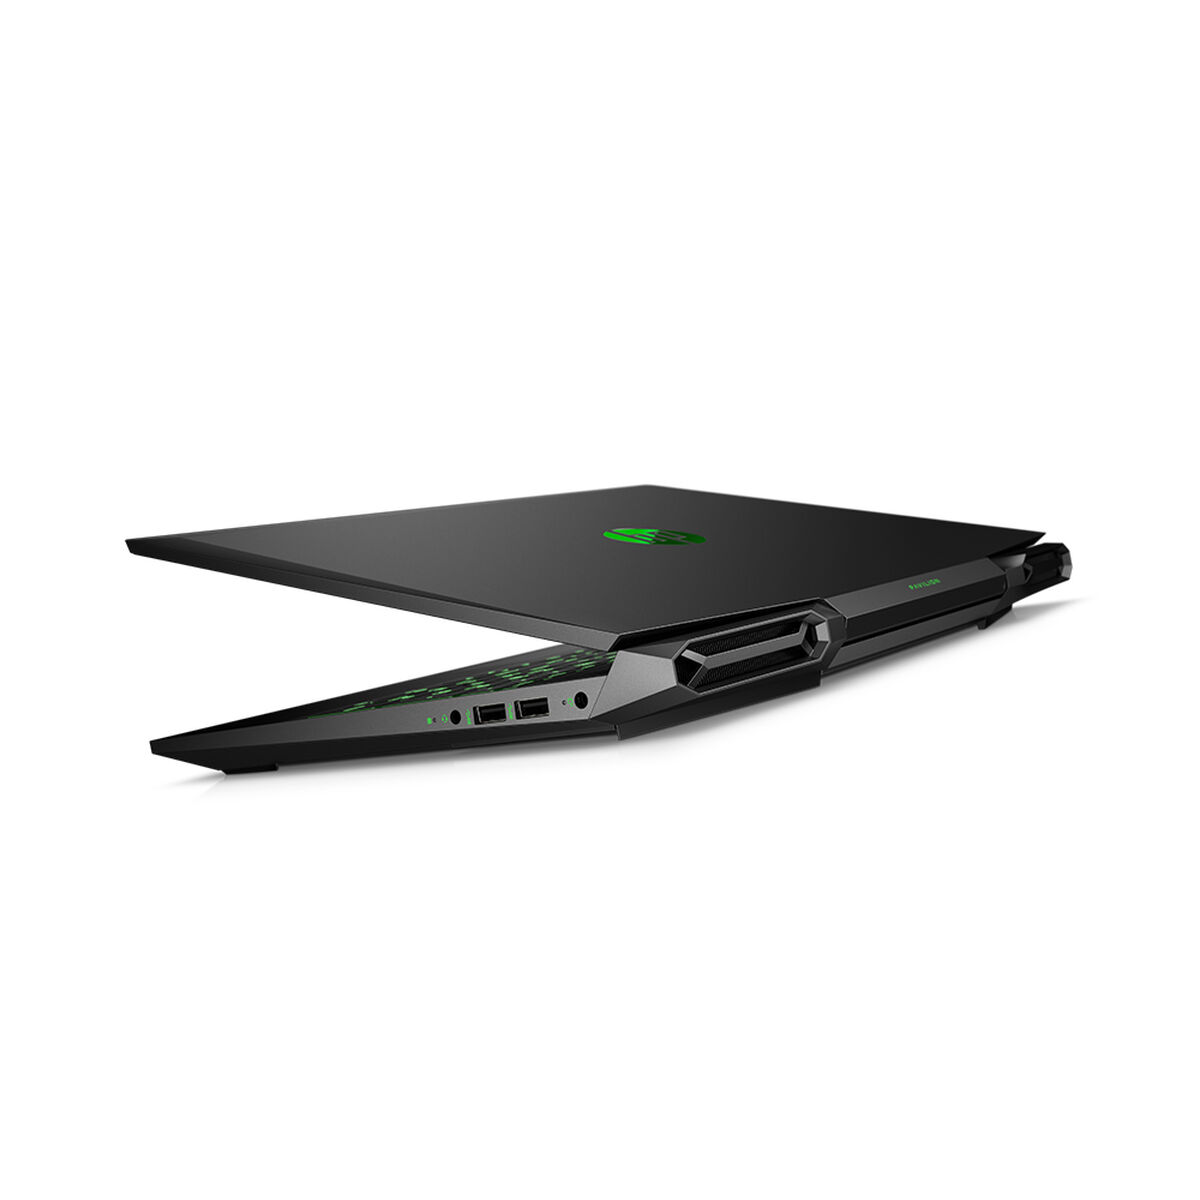 Notebook Gamer HP 15-dk1028 Core i5-10300H 8GB 256GB SSD 15.6" NVIDIA GTX1050